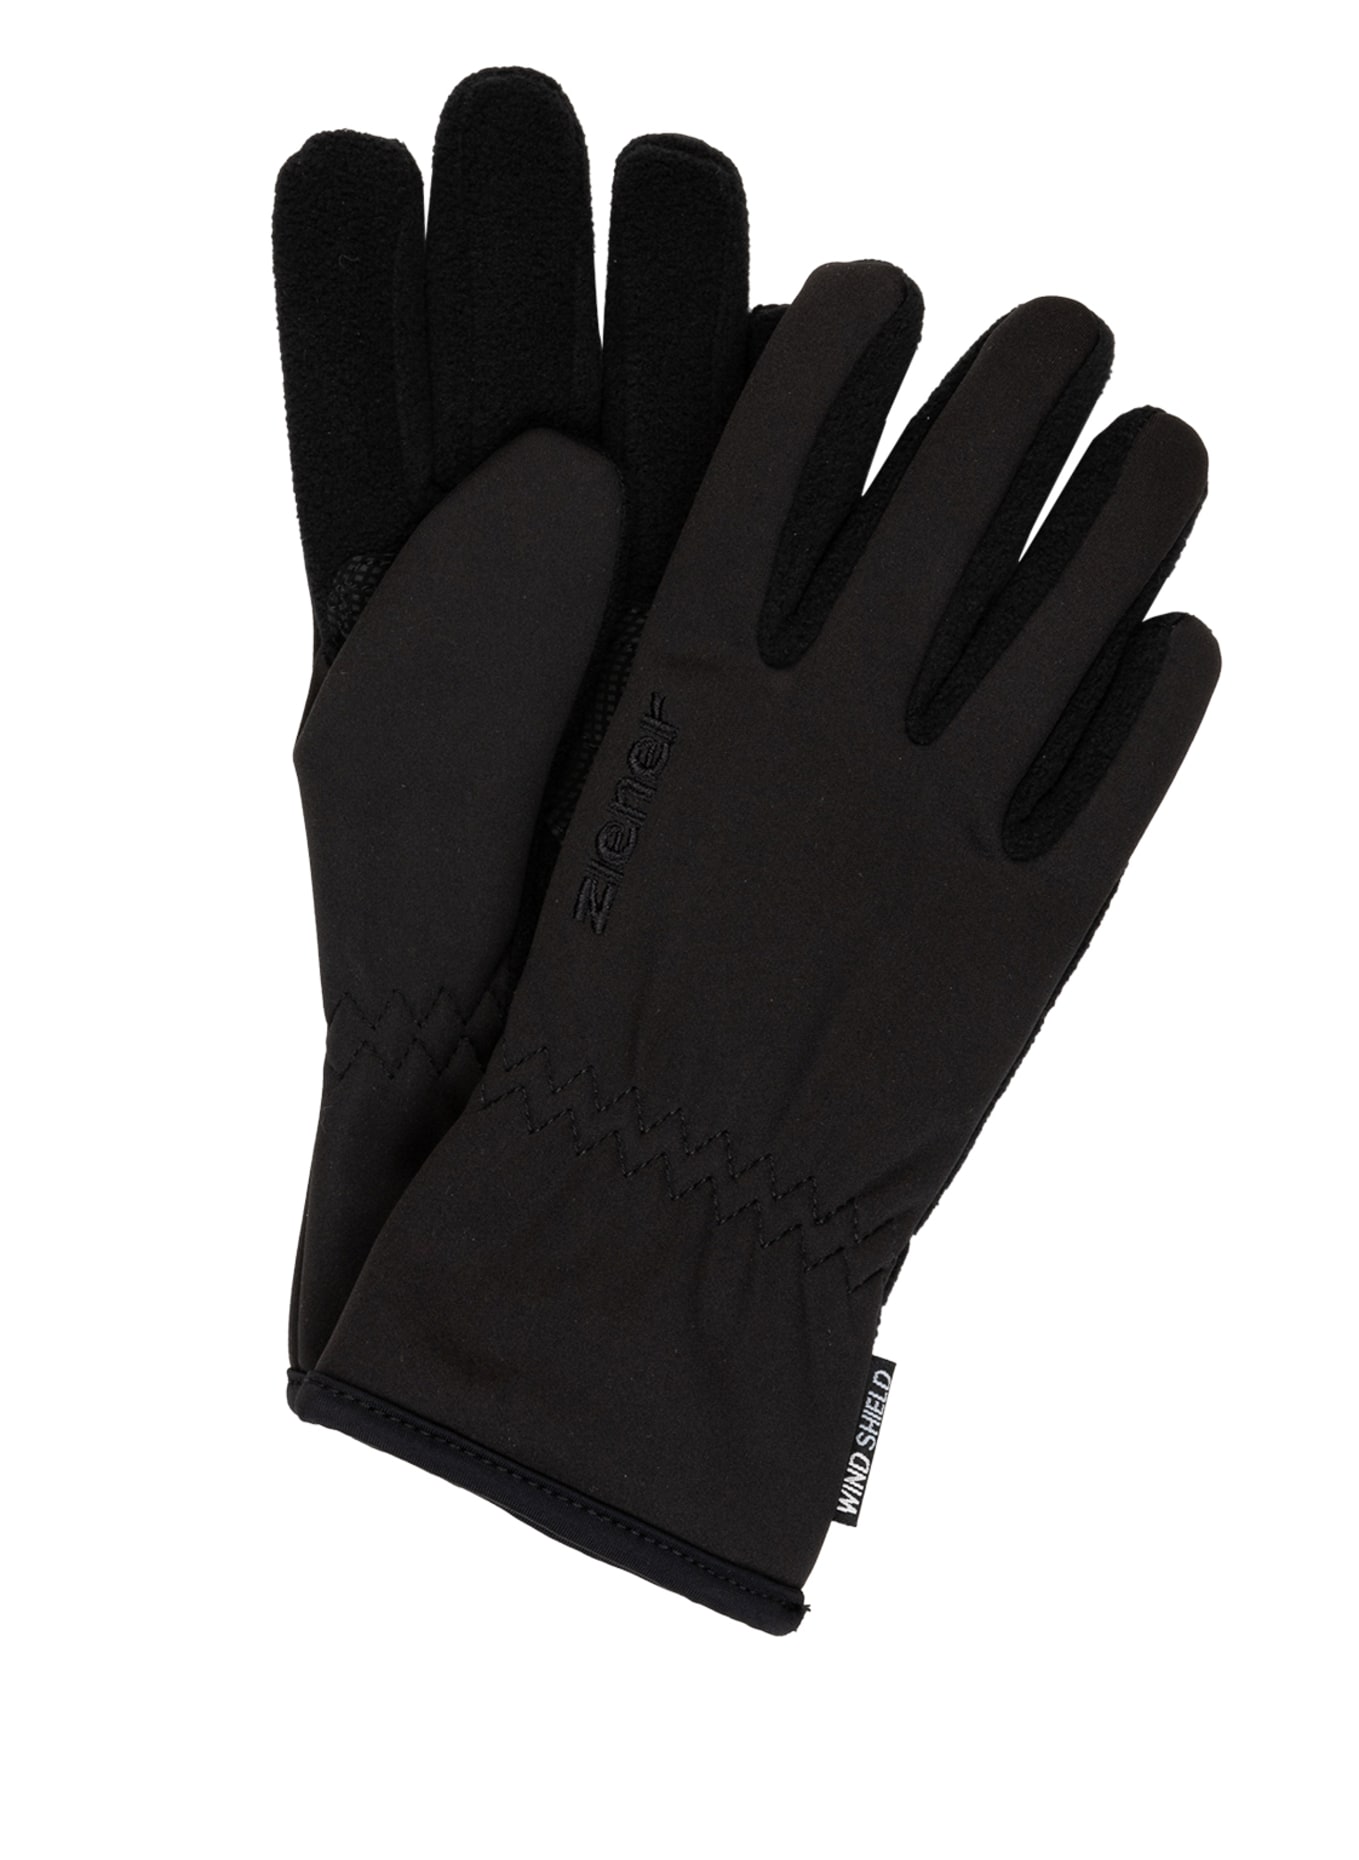 ziener Multisport-Handschuhe LIMPORT in schwarz